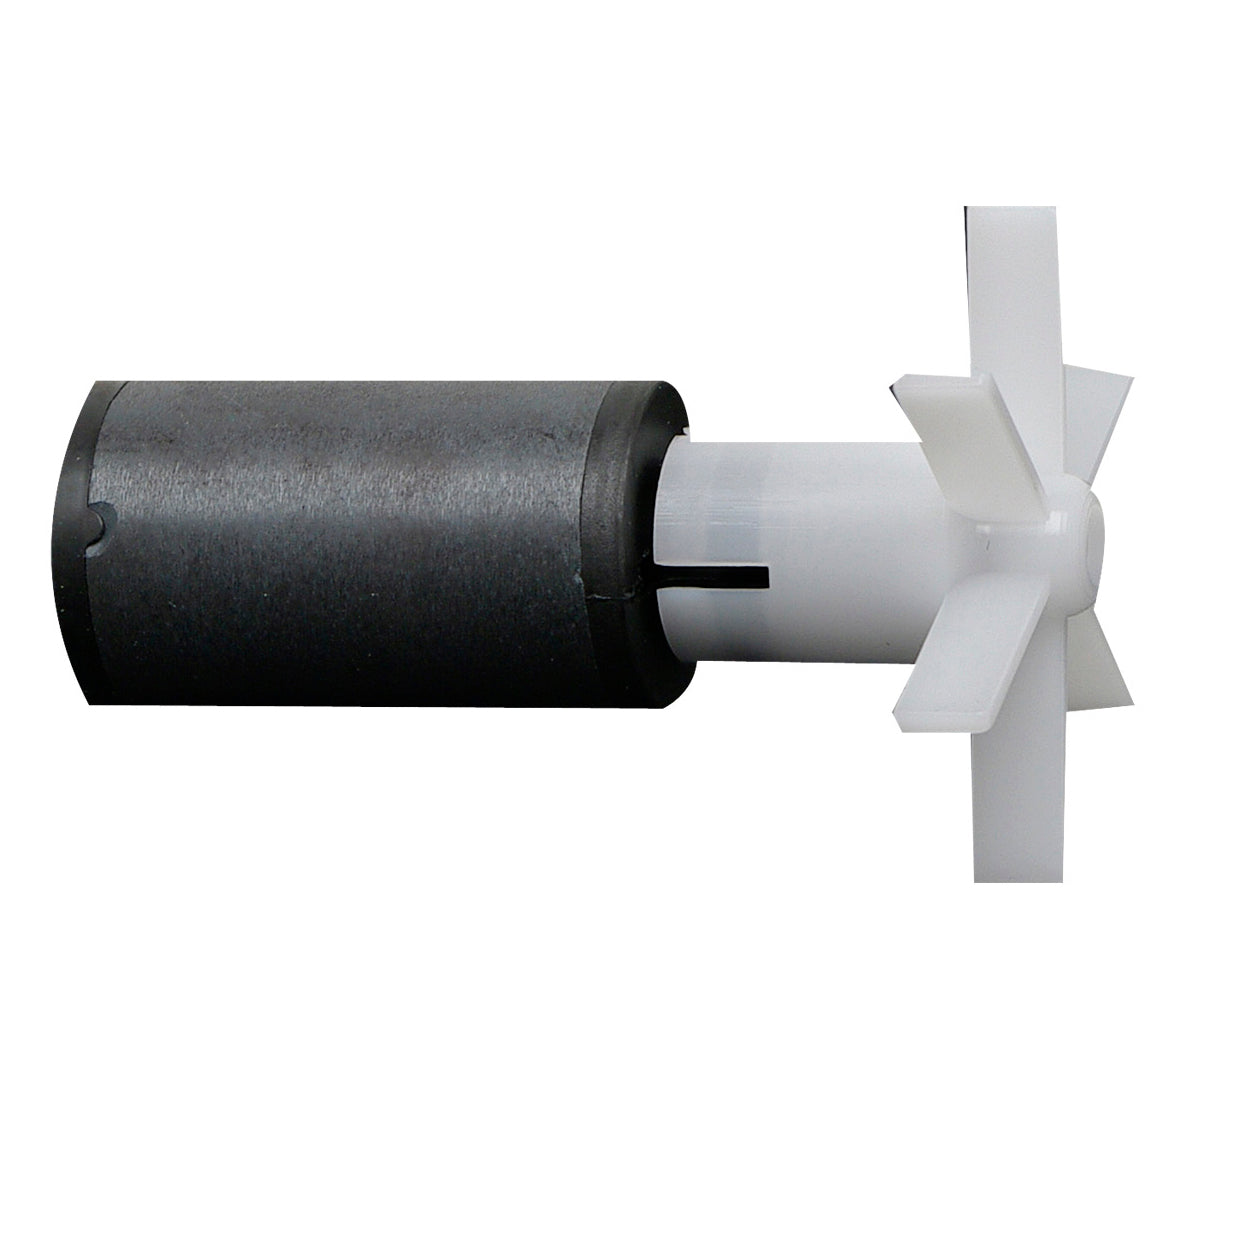 Impulseur magnétique pour filtre Fluval 404/405